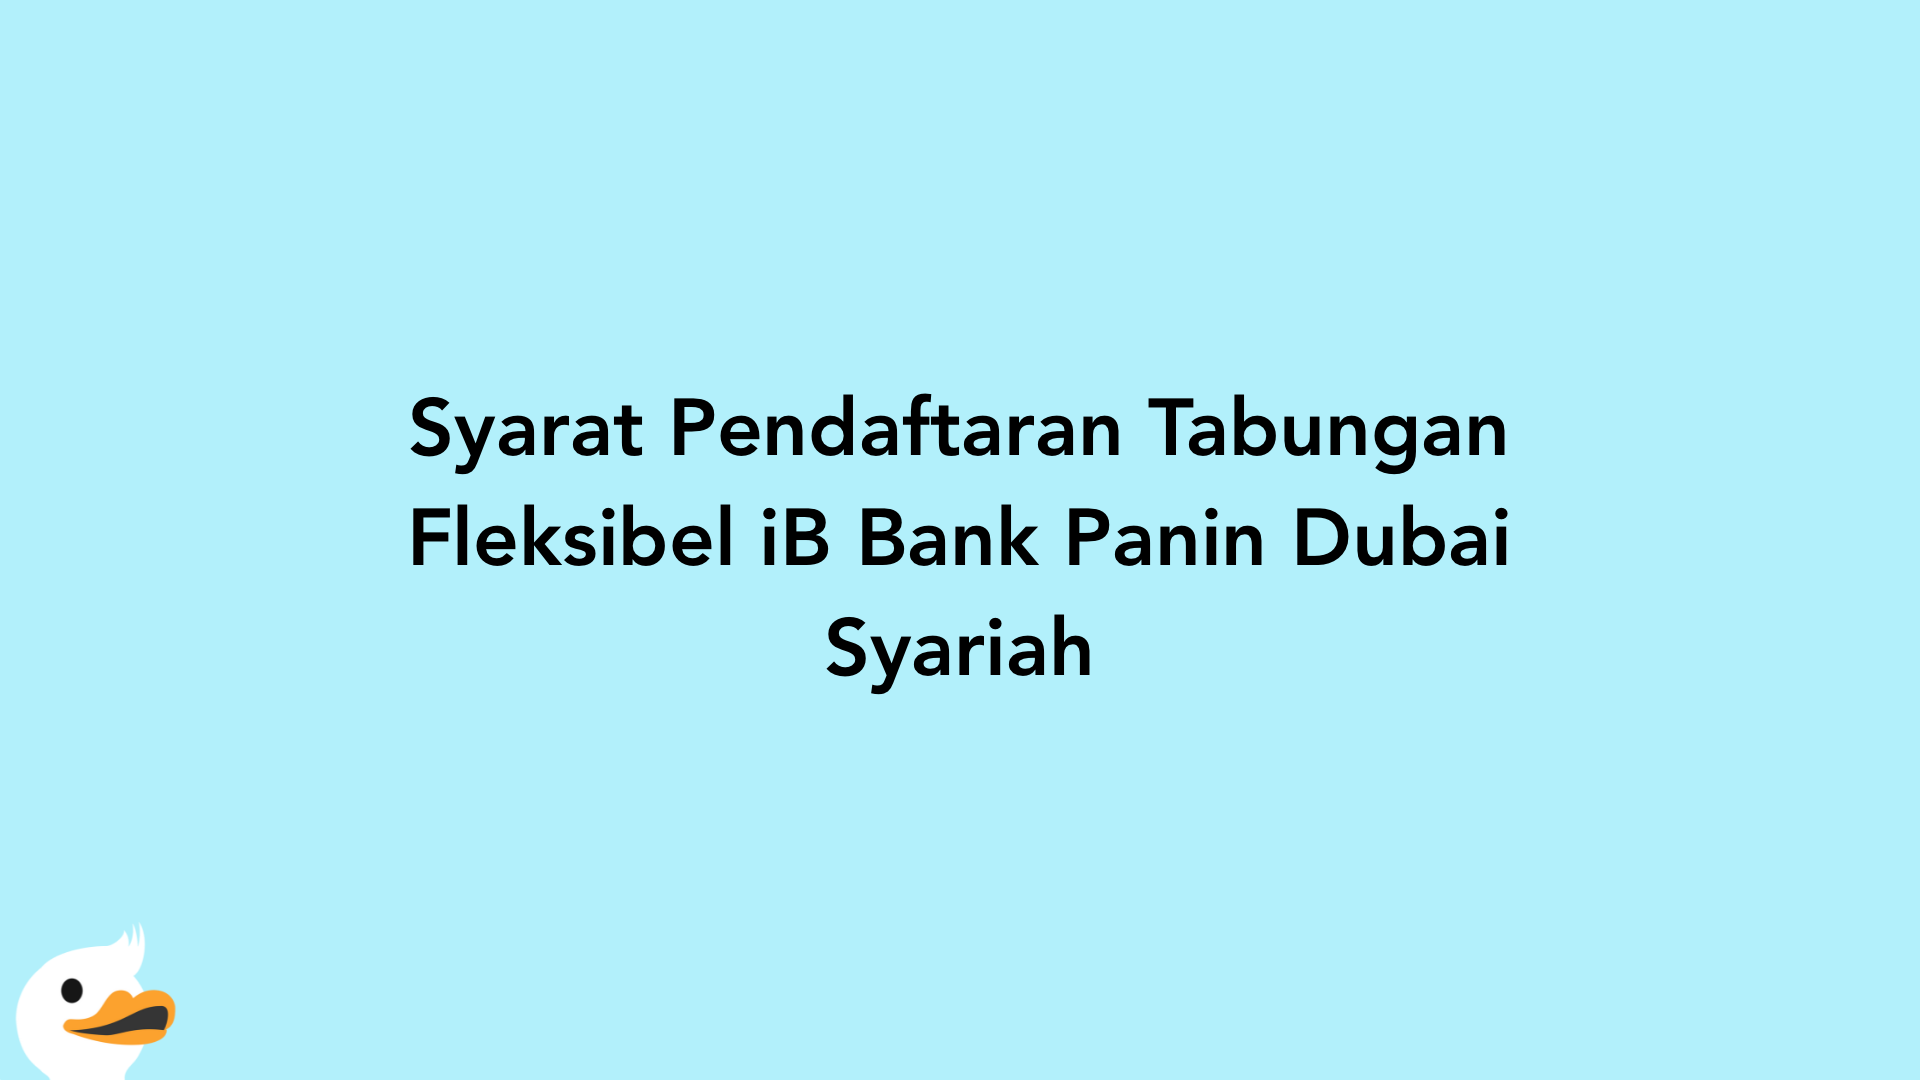 Syarat Pendaftaran Tabungan Fleksibel iB Bank Panin Dubai Syariah